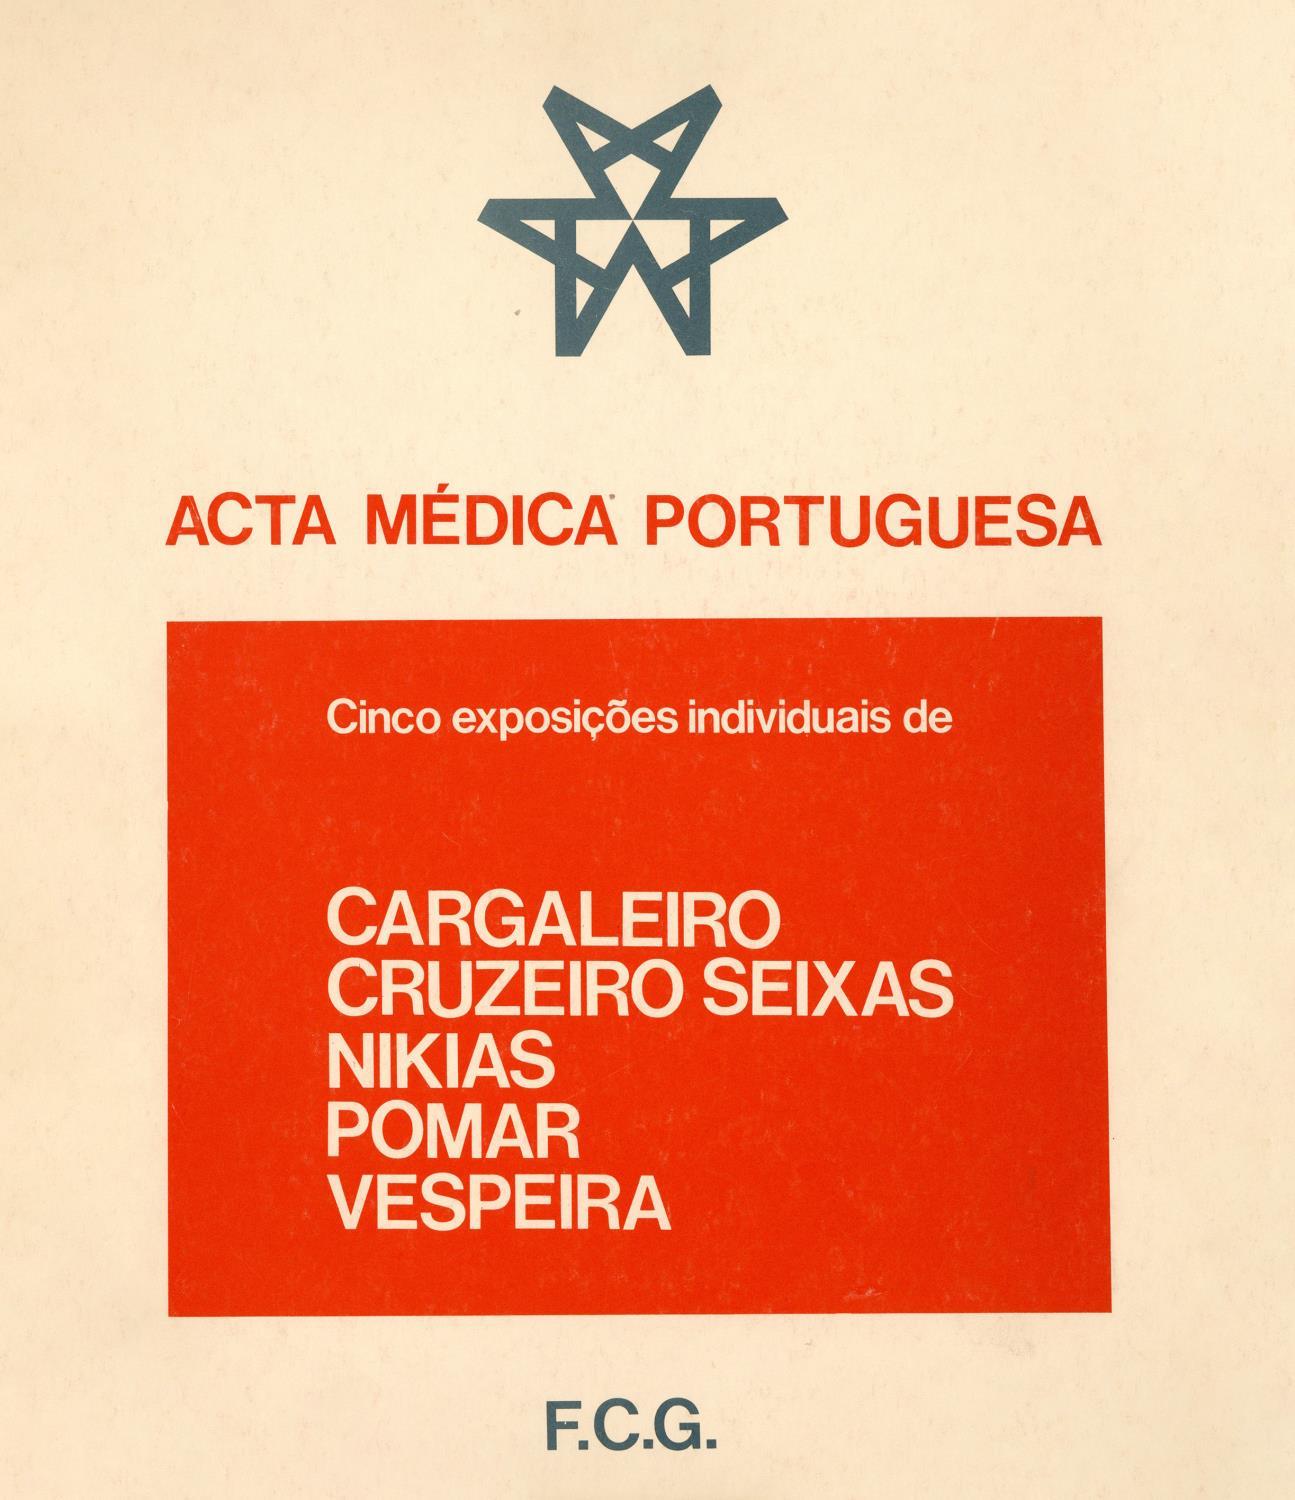 1980_Acta_Medica_Portuguesas_catalogo_AHP1395.2